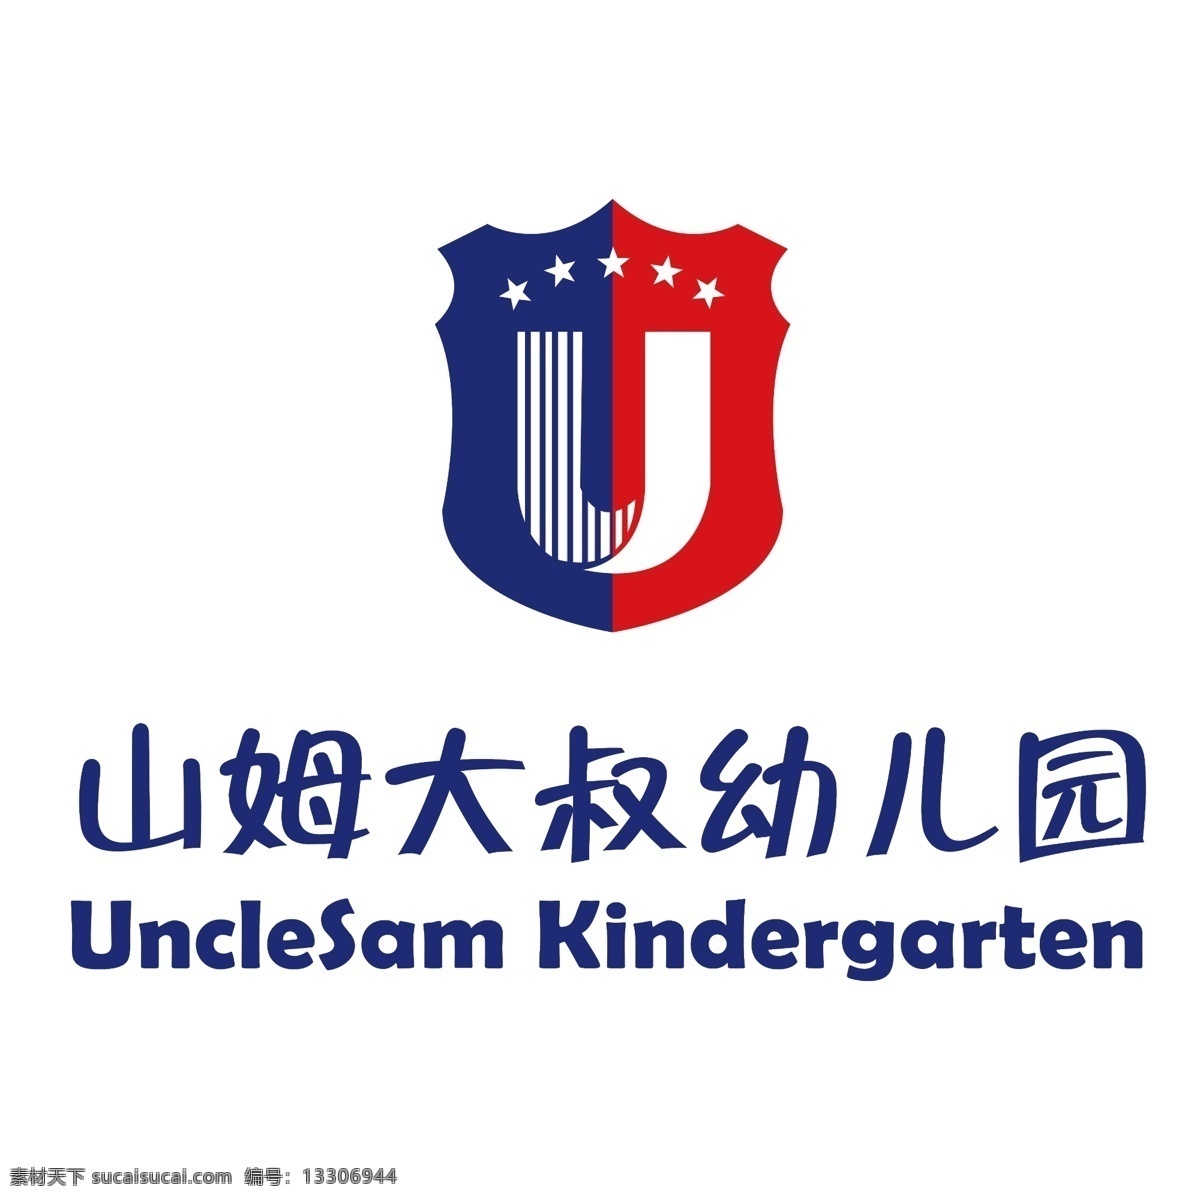 山姆大叔 幼儿园 logo logo设计 国际化 蓝色 分层